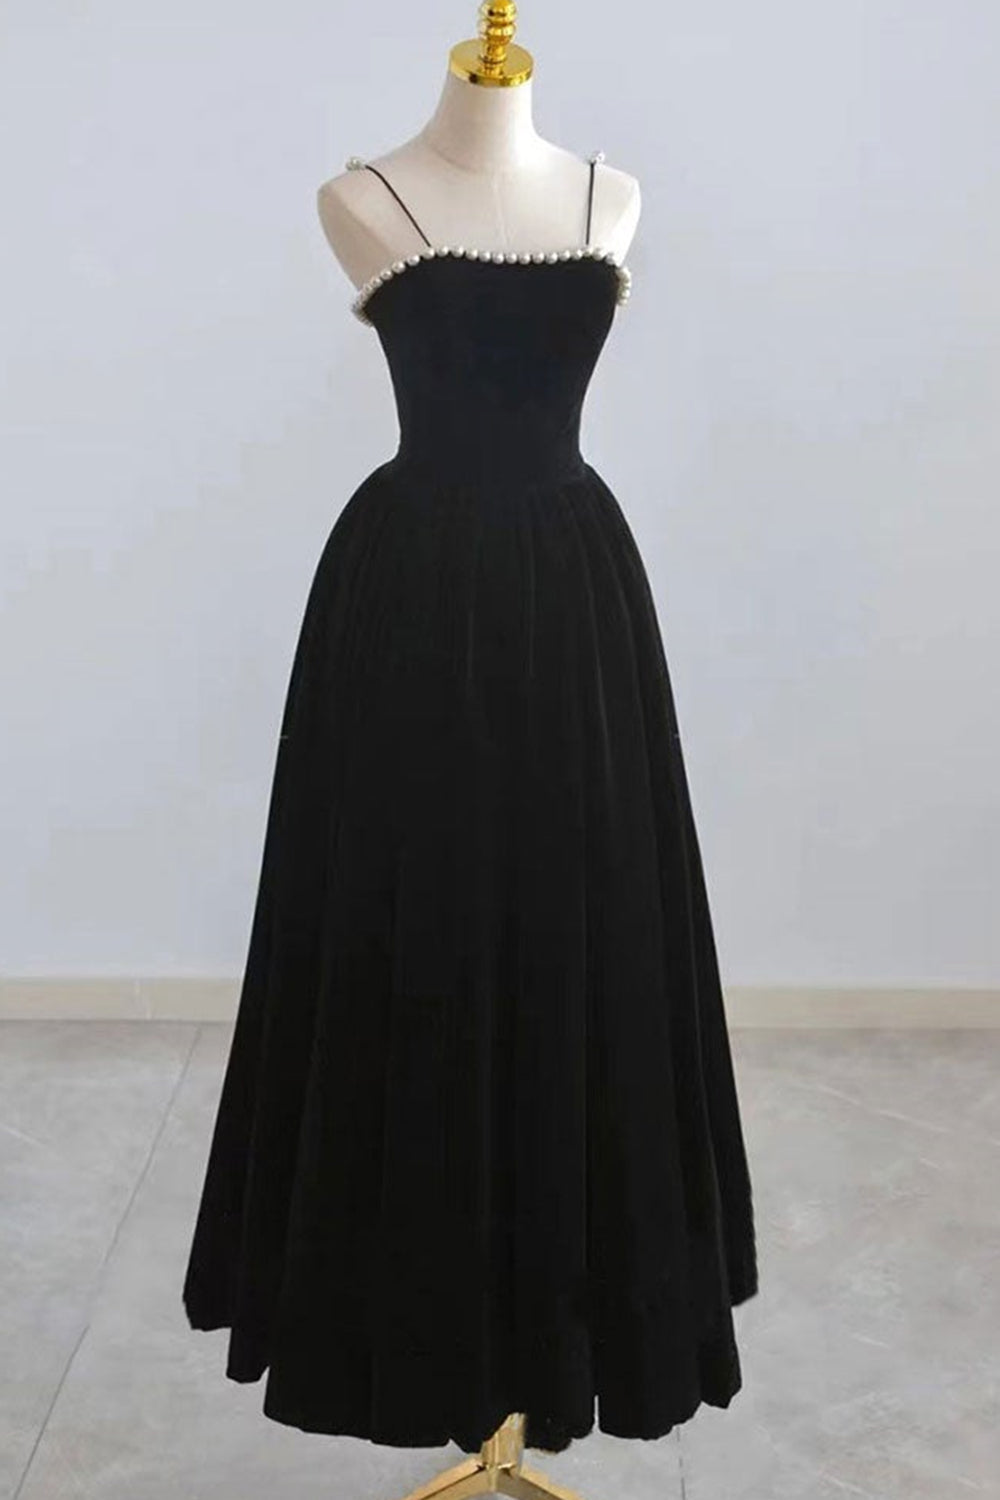 Thin Straps Black Velvet Tea Length Prom Homecoming Dresses with Pearls, Black Velvet Formal Graduation Evening Dresses